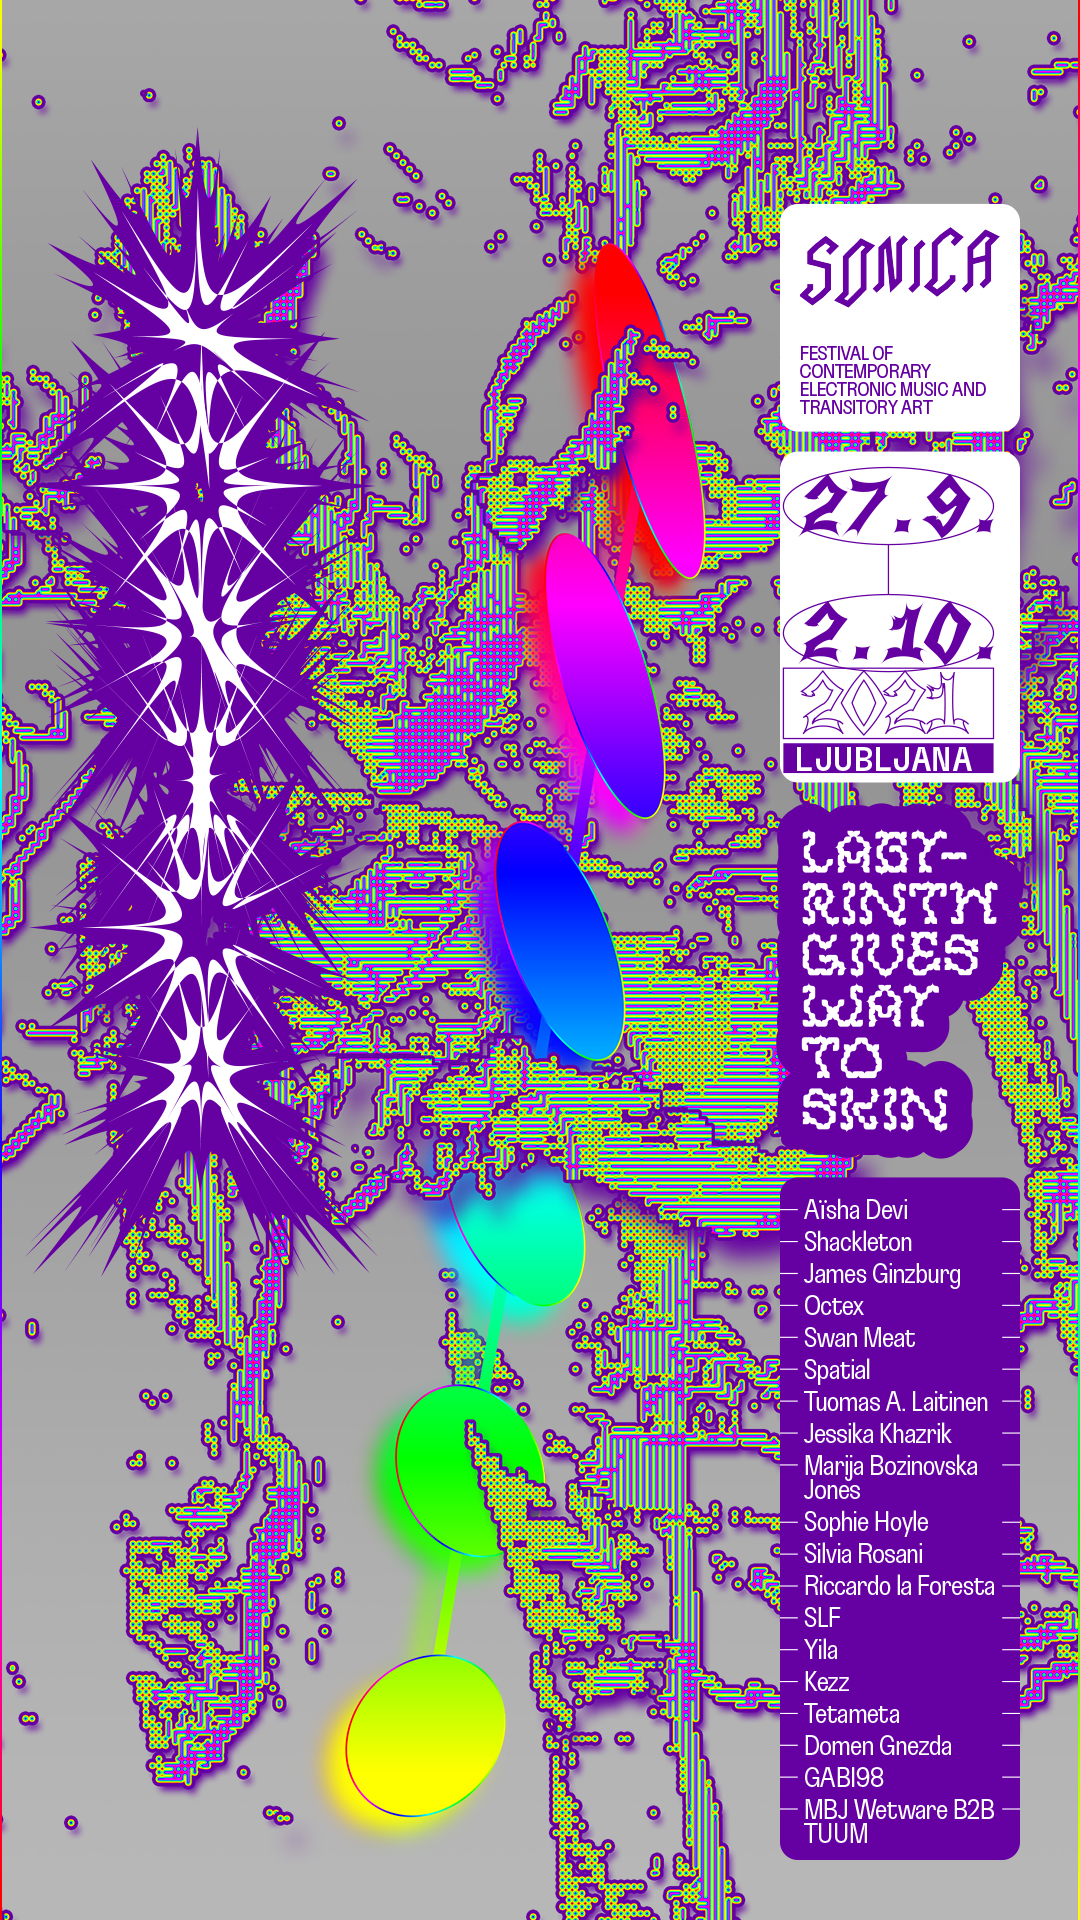 SONICA 2021 FESTIVAL — 27Sep to 02Oct in Ljubljana, Slovenia